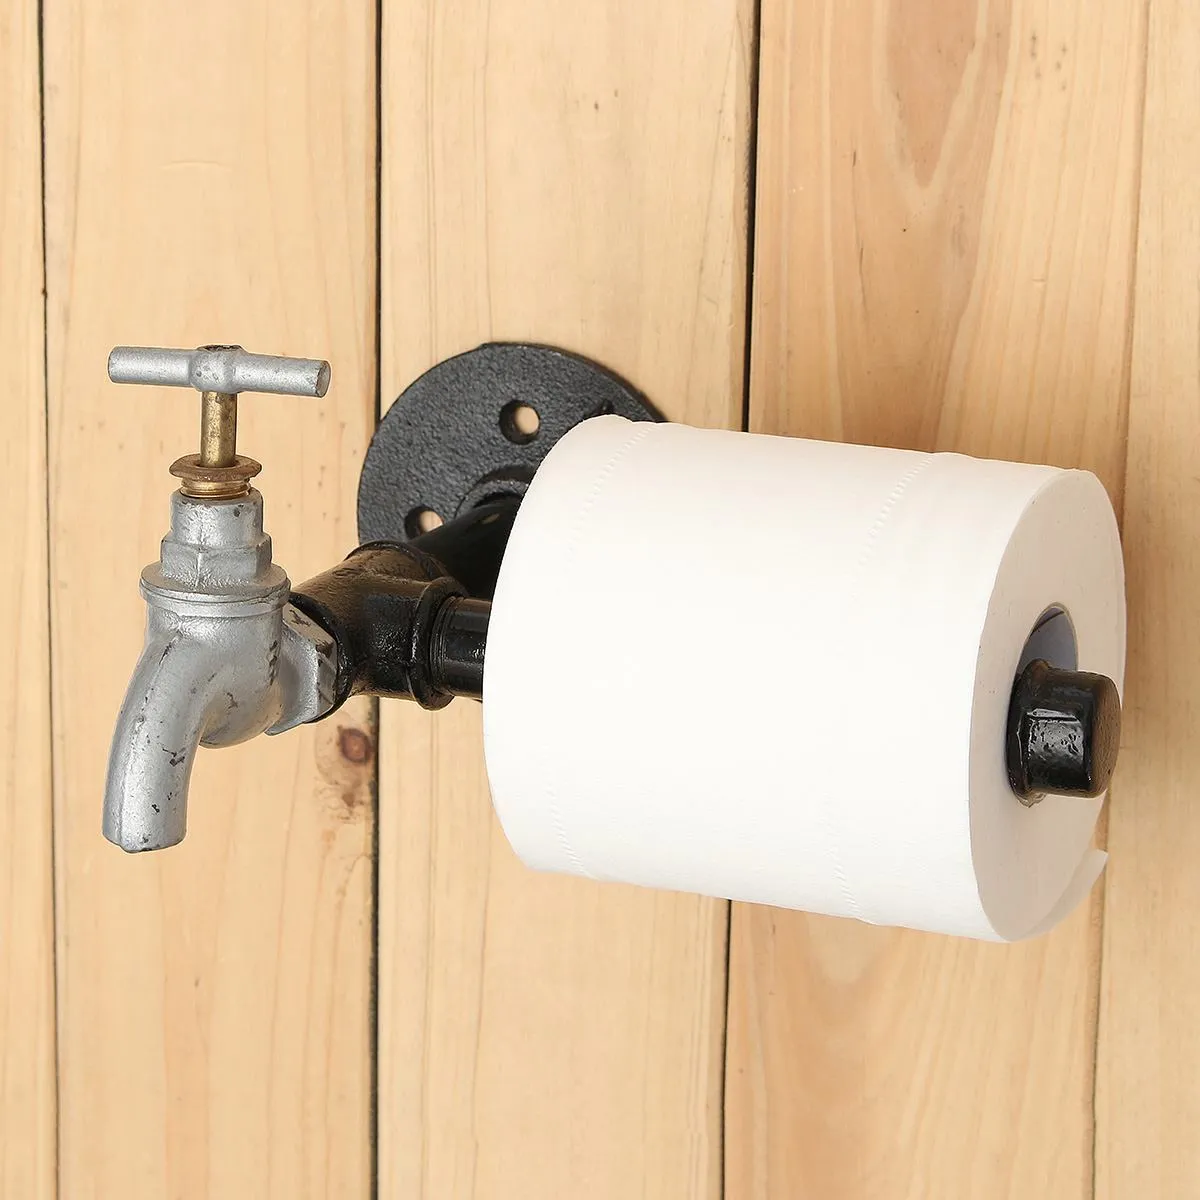 Soporte de rollo de papel higiénico de hierro industrial, soporte de rollo de papel, estilo rústico, soporte de papel montado en la pared, soporte para estante de baño T200425